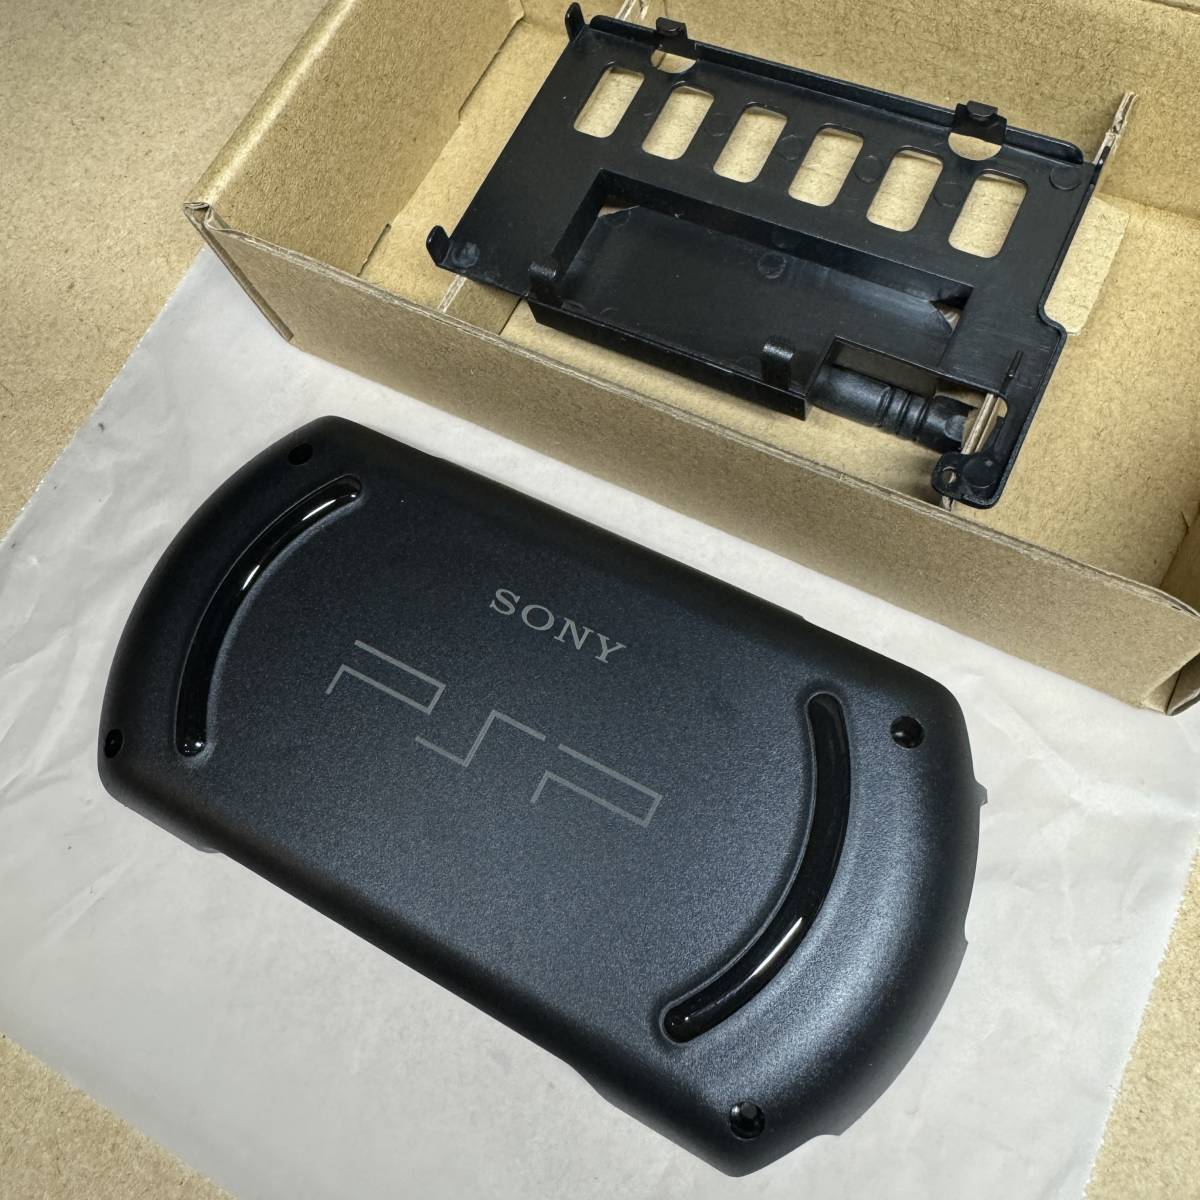 PSP GO VITA для батарея большой емкости - установка задний покрытие & пенал для батареи PS VITA чёрный новый товар не использовался товар 